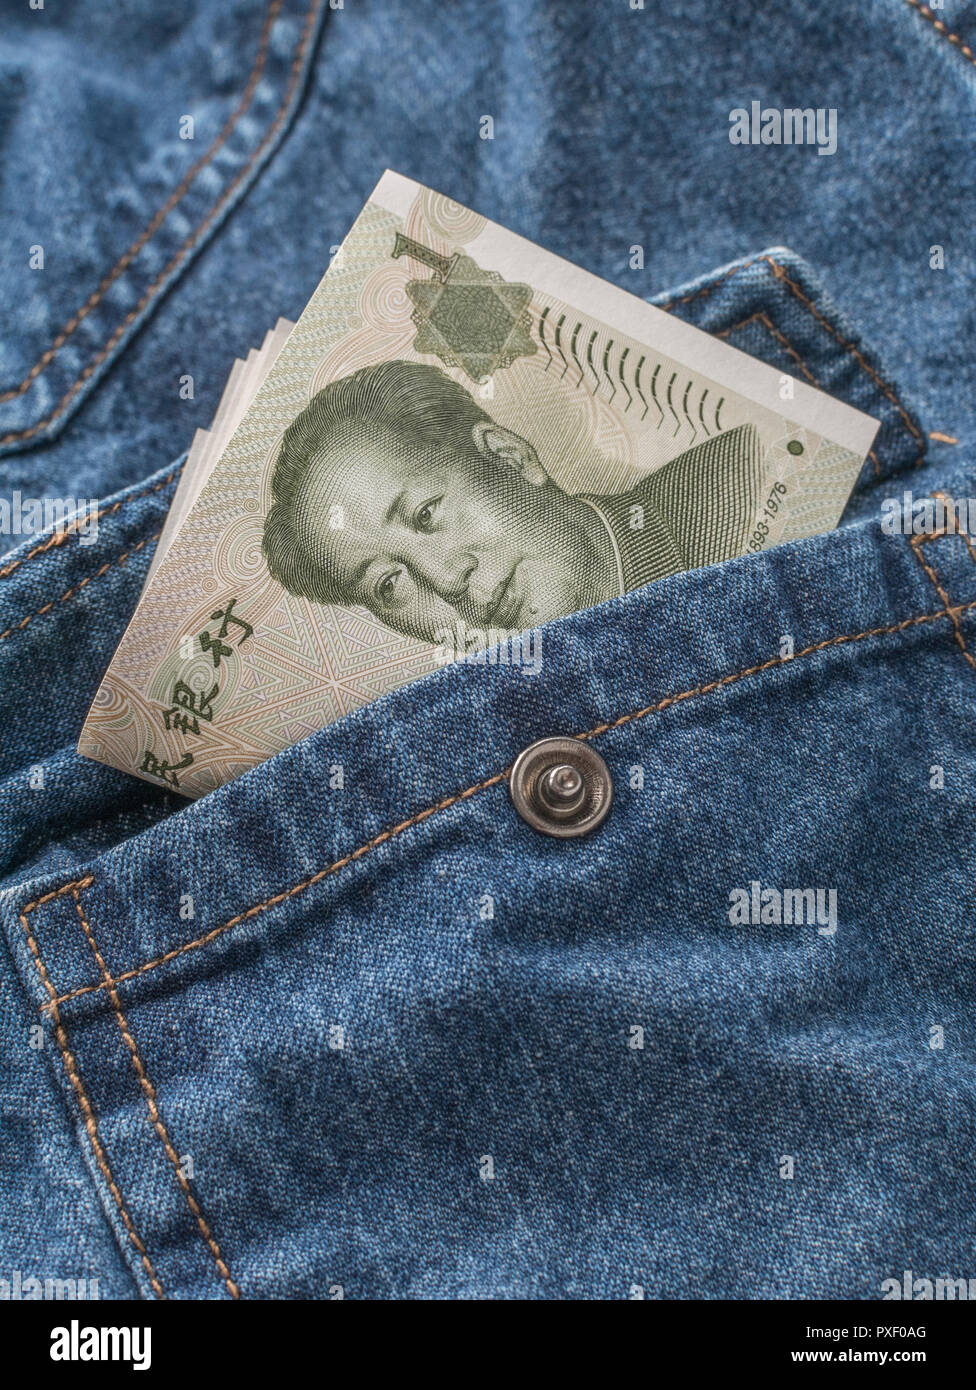 Chinesische Yuan Renminbi/Banknoten mit Tasche - Metapher für persönlichen Gewinn, Chinesische Löhne, Lohnniveau, China Bekleidungsindustrie. Stockfoto